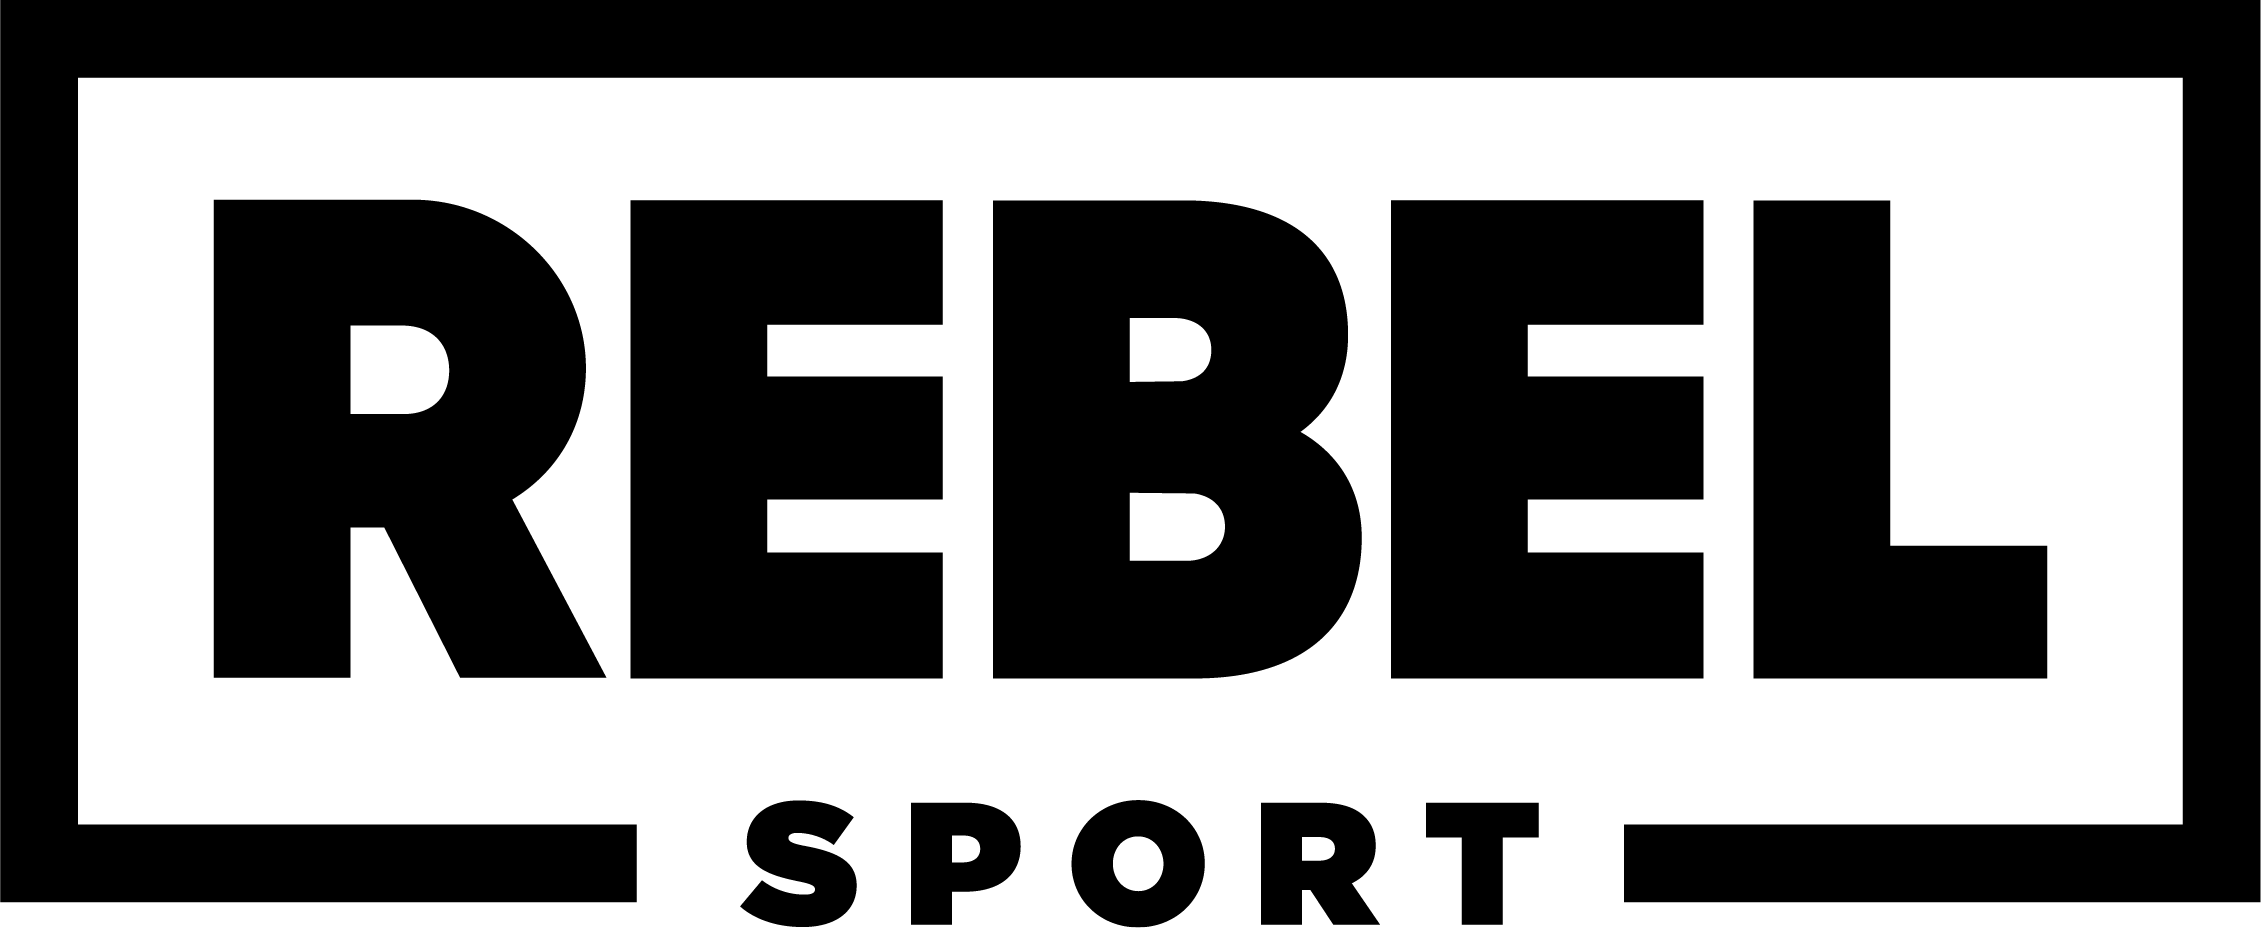 La Rebel Logo